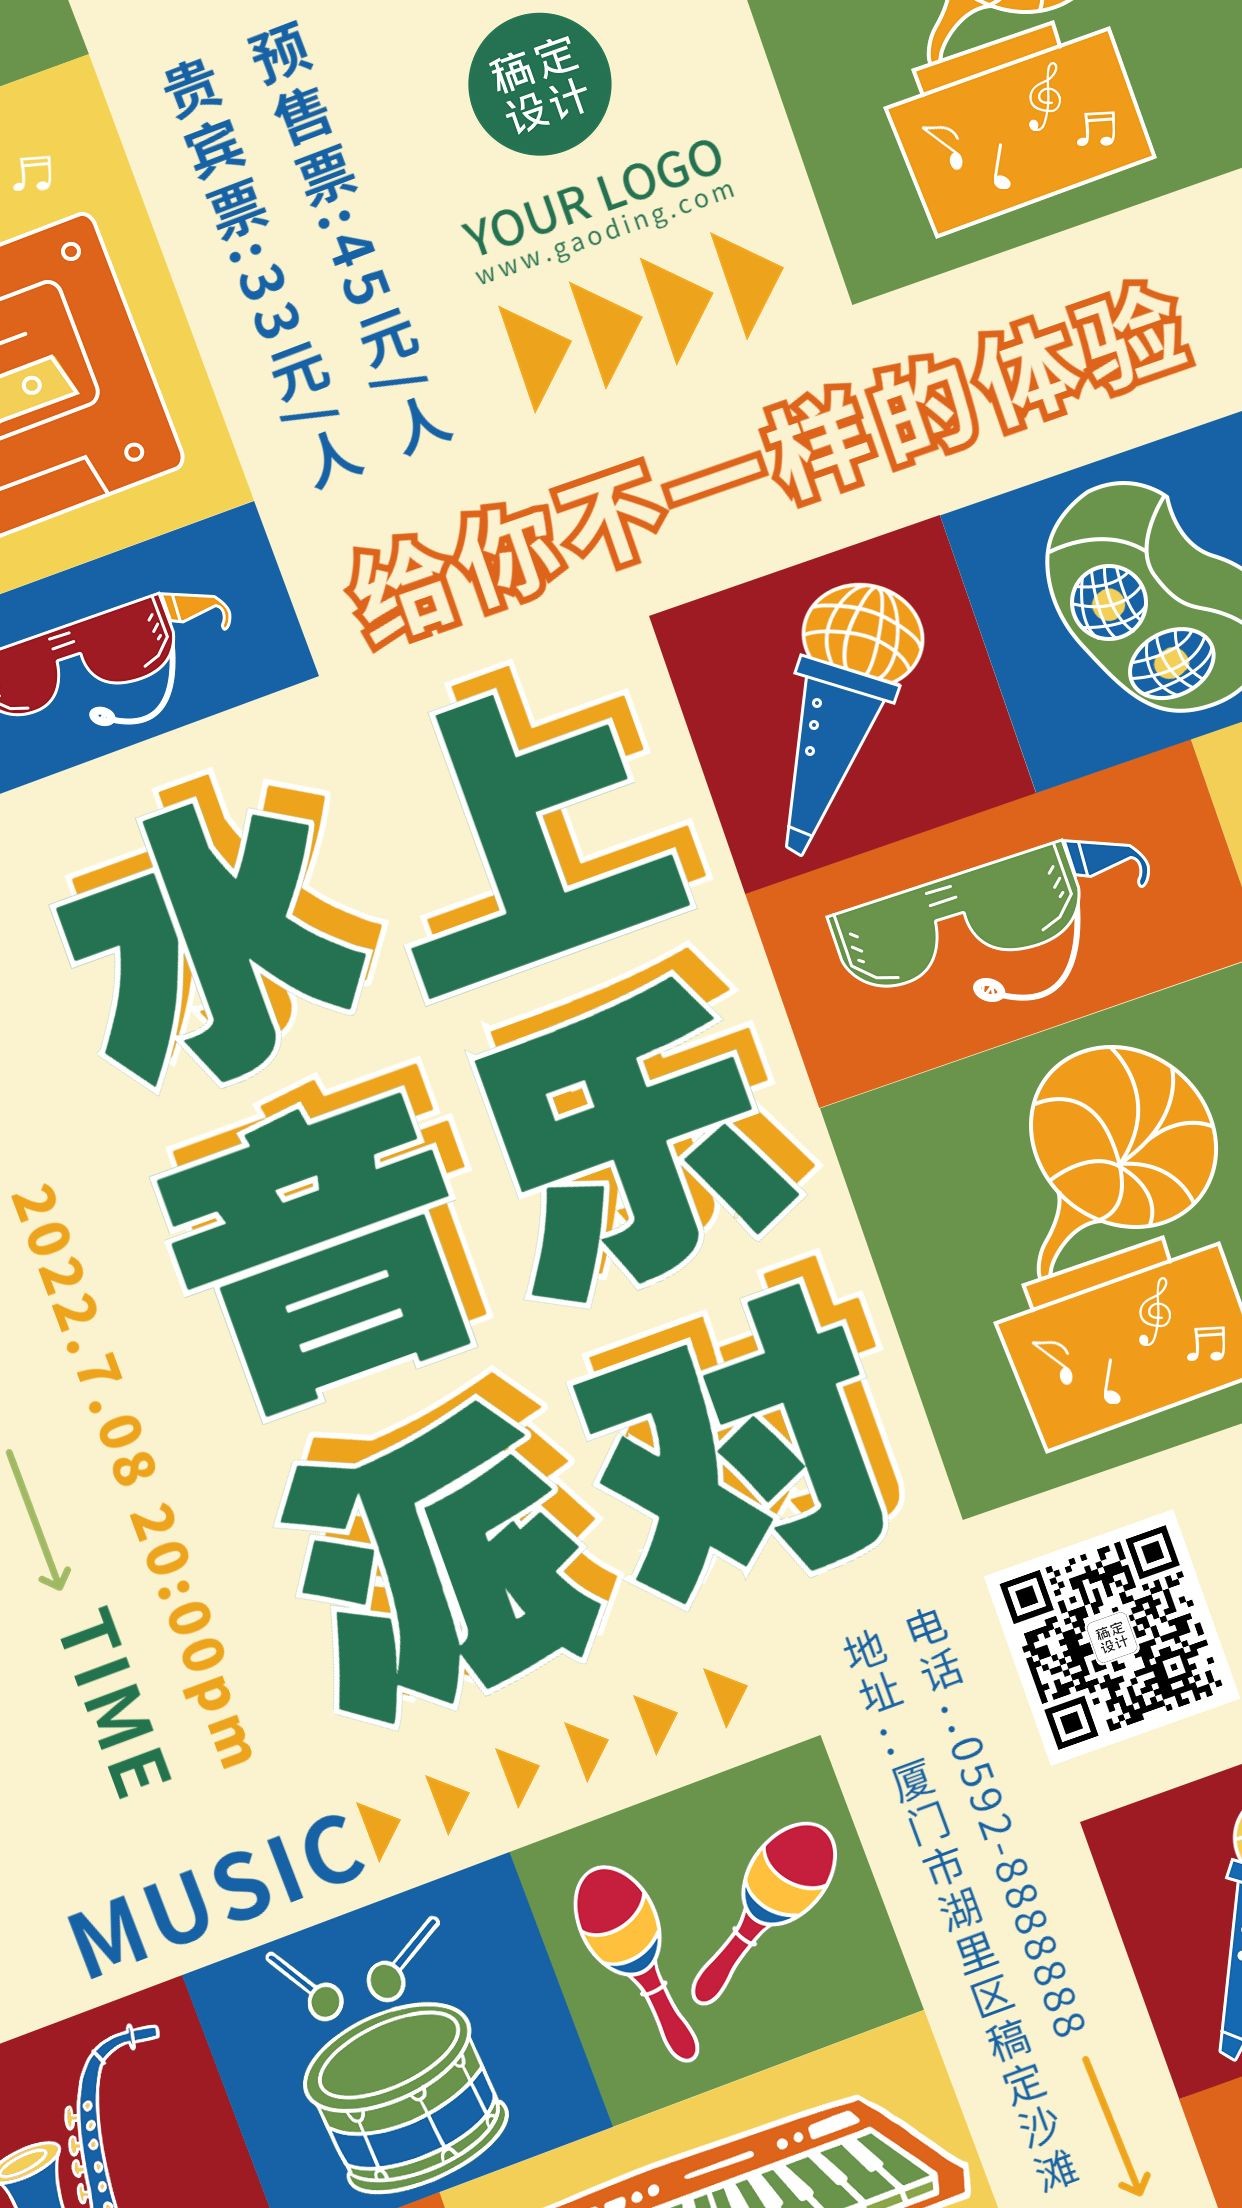 夏季音乐节电音节活动宣传海报